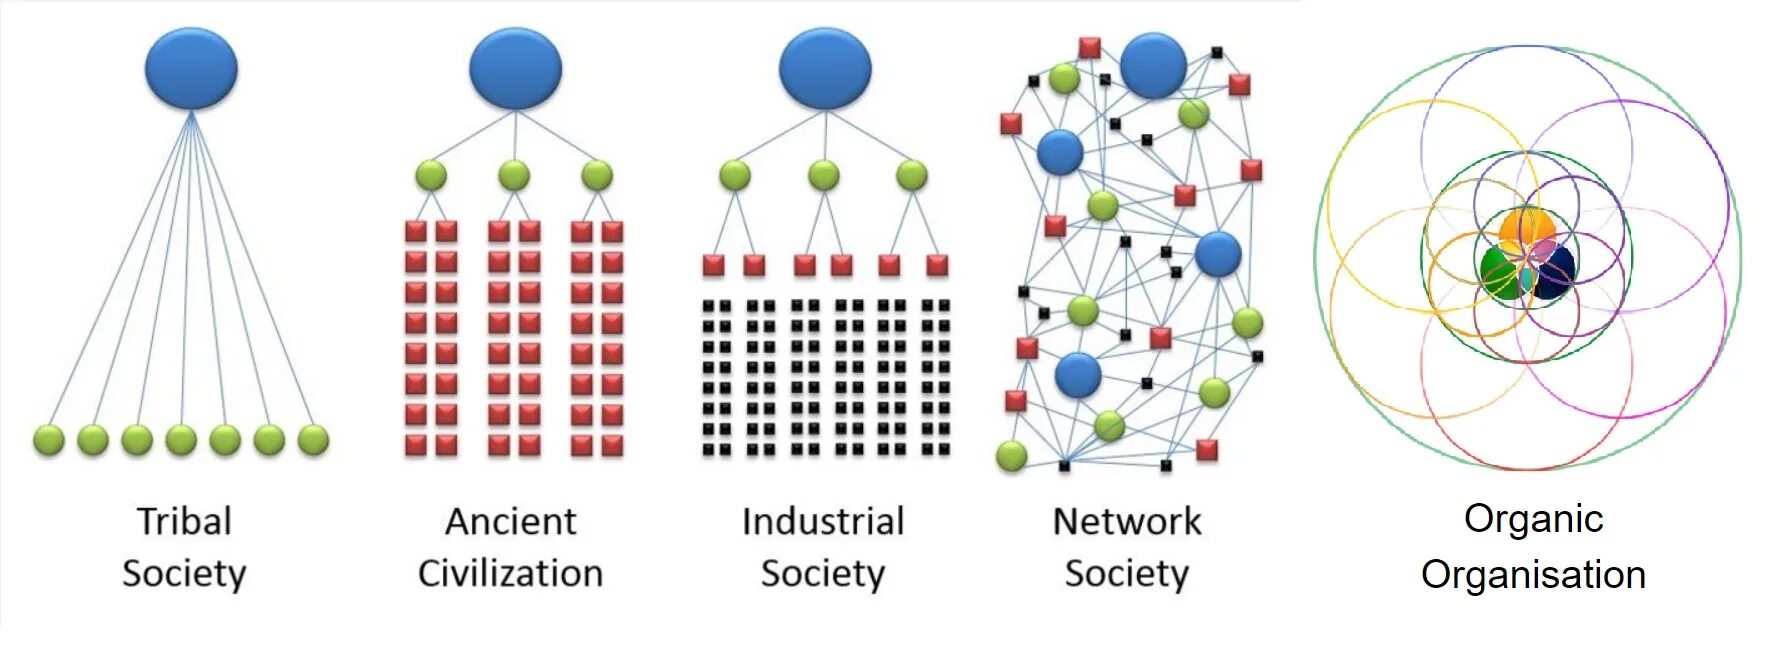 Сетевое общество является. Сетевое общество Кастельс. Концепция Кастельса. Сетевая теория общества. М. Кастельс. Информационная эпоха и информациональная экономика.